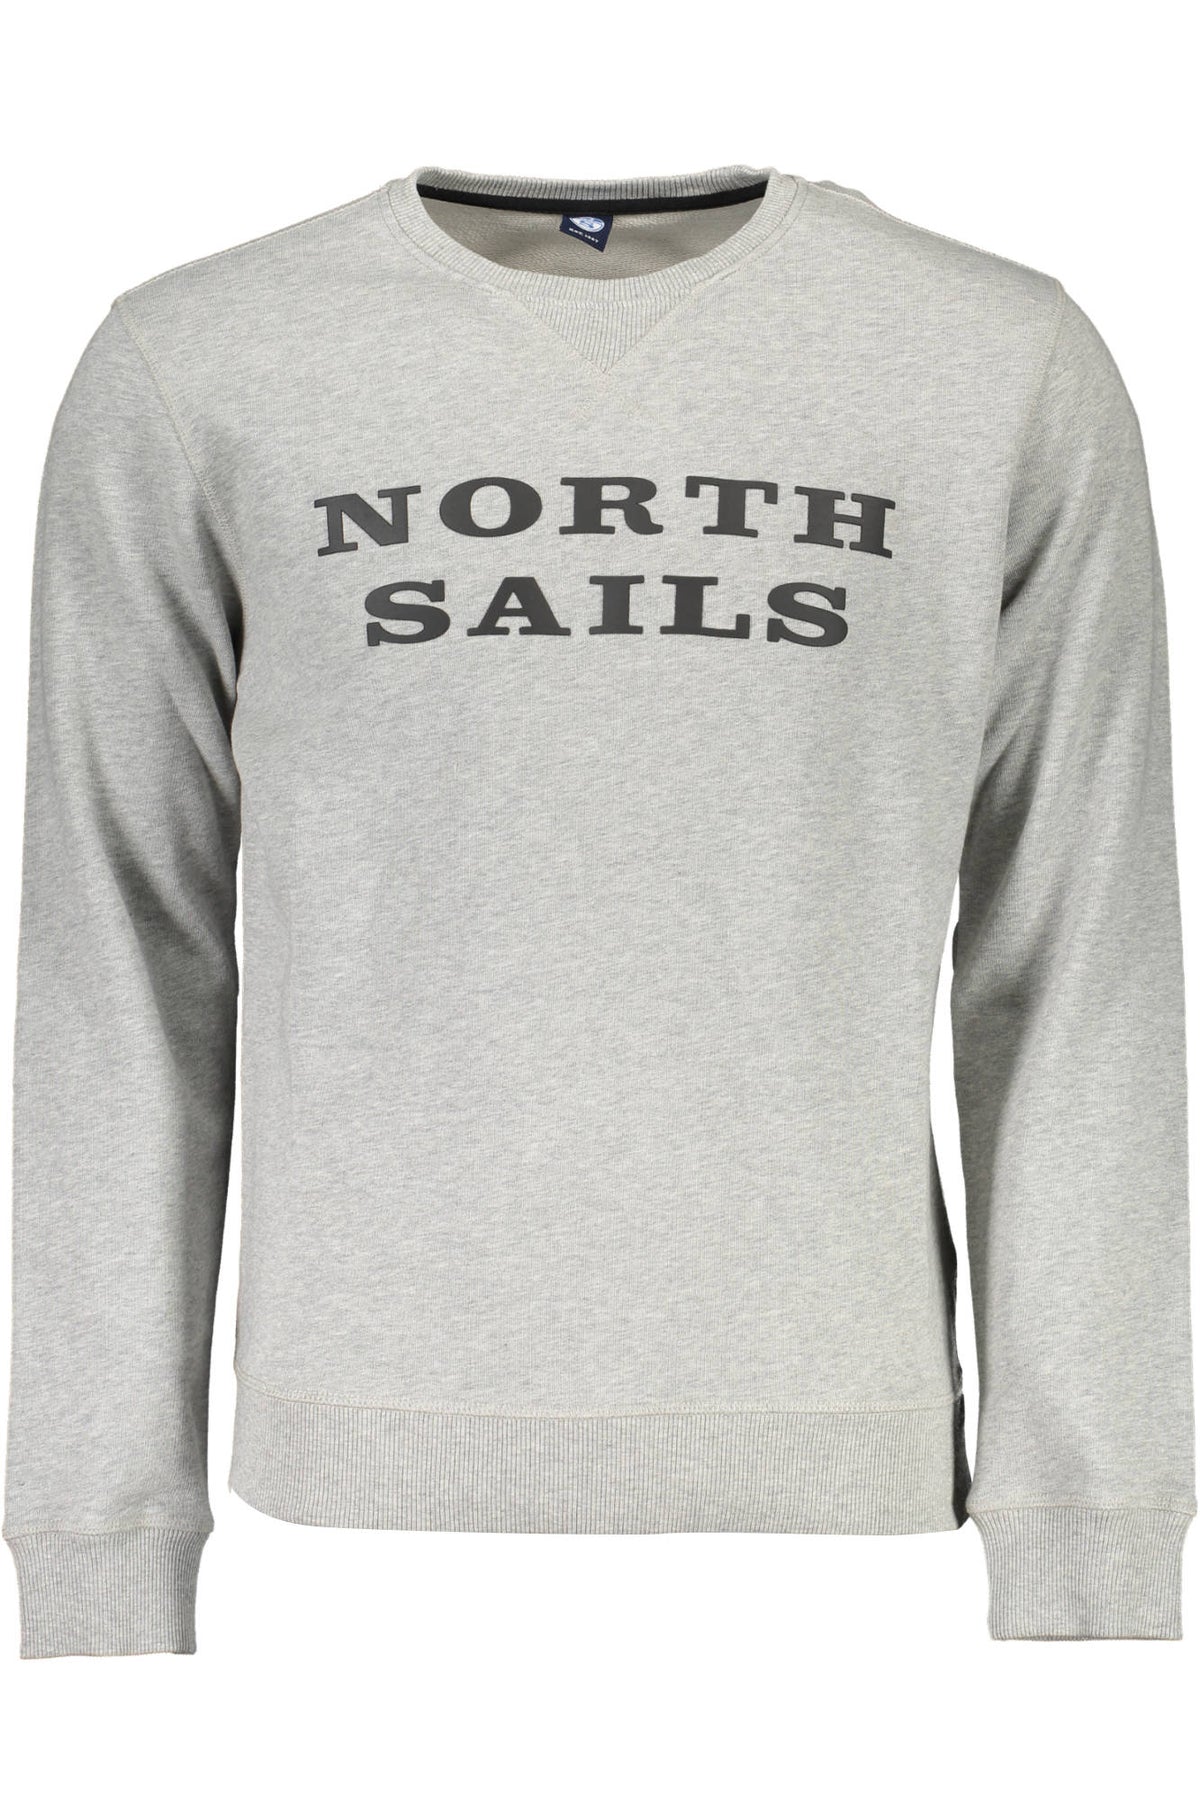 NORTH SAILS Herren Pullover Sweatshirt Shirt Oberteil mit Rundhalsausschnitt, langärmlig